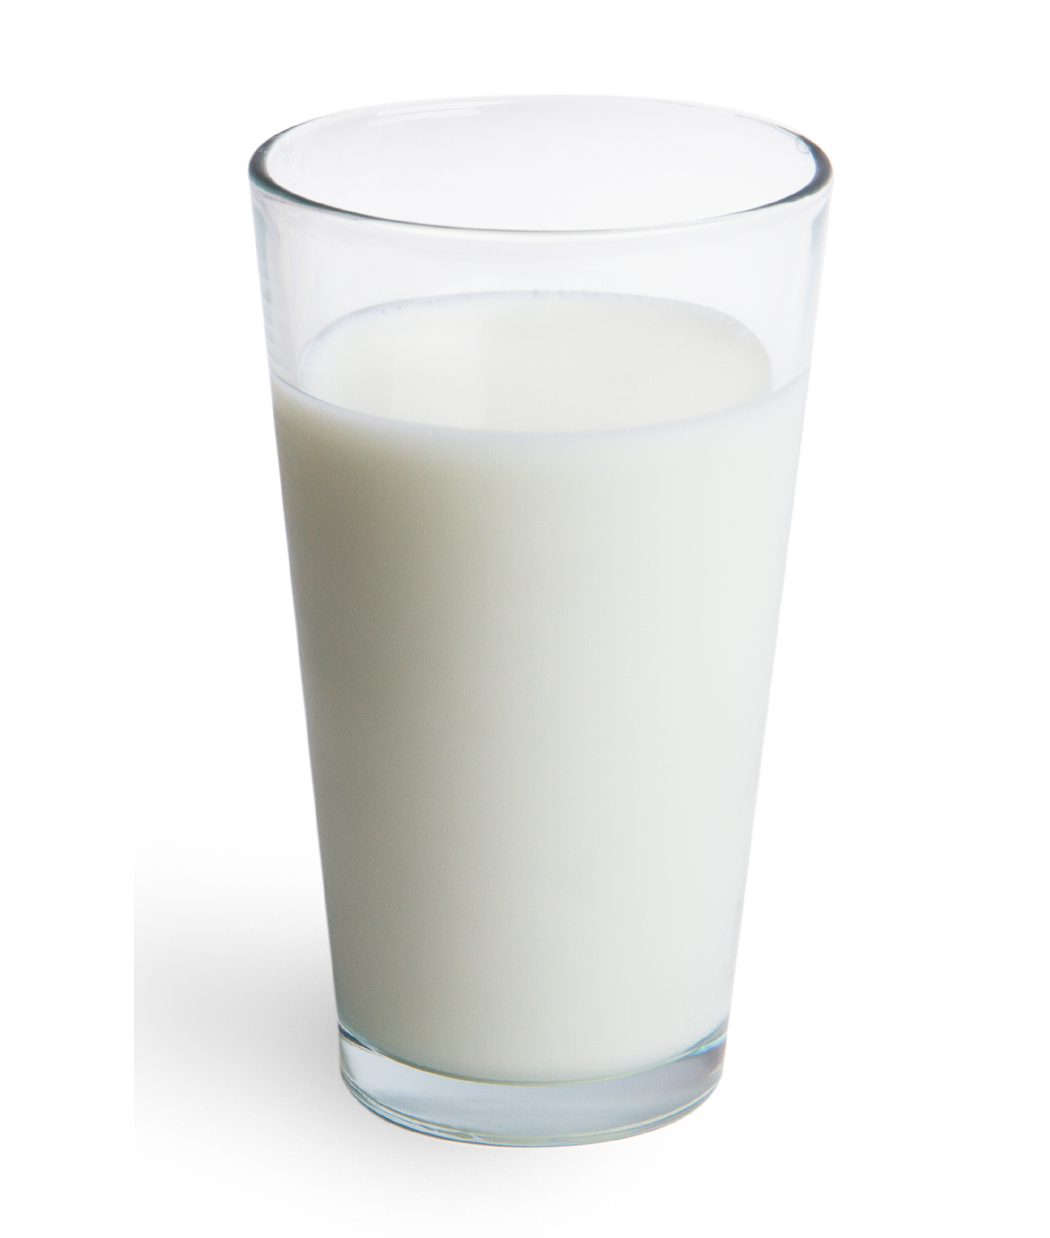 Glass buttermilk